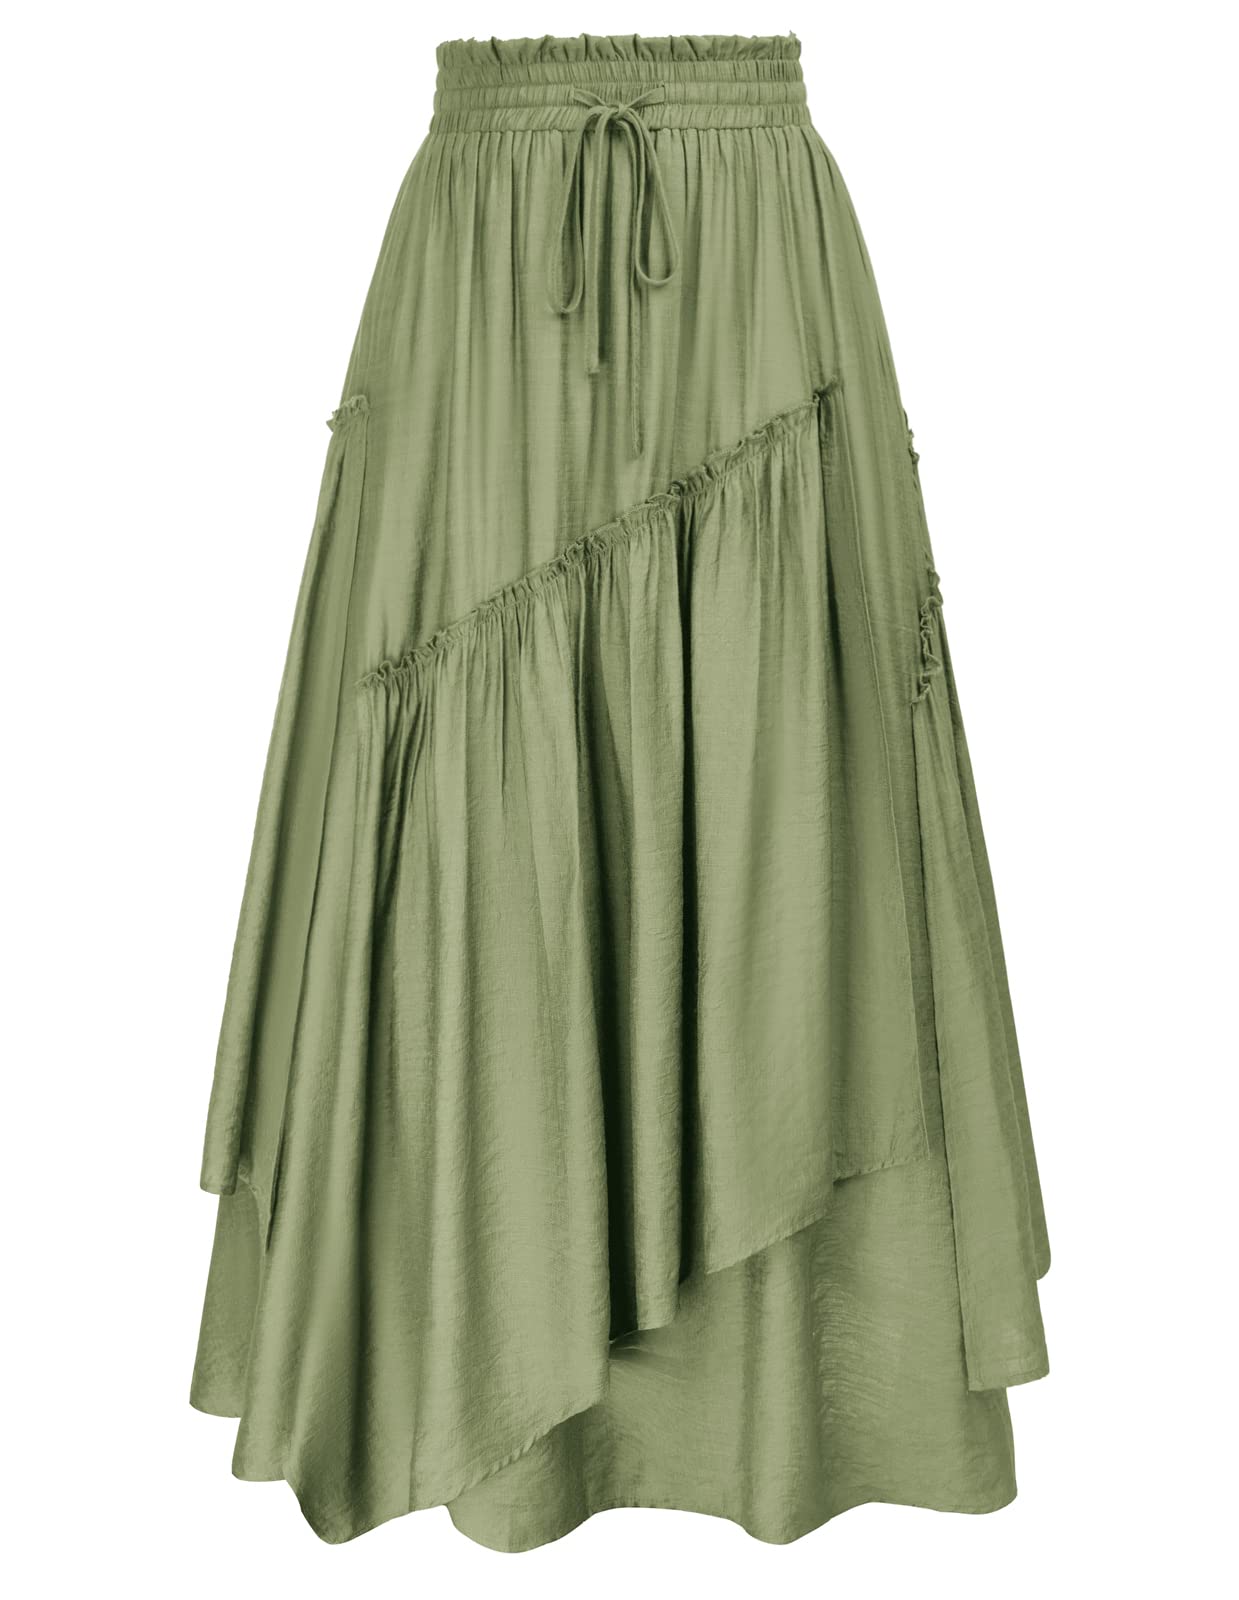 Outlet Shop  SCARLET DARKNESS Jupe trapèze de style Renaissance pour femme - Taille haute - Style vintage - Avec poches UhZZxUm4r à vendre